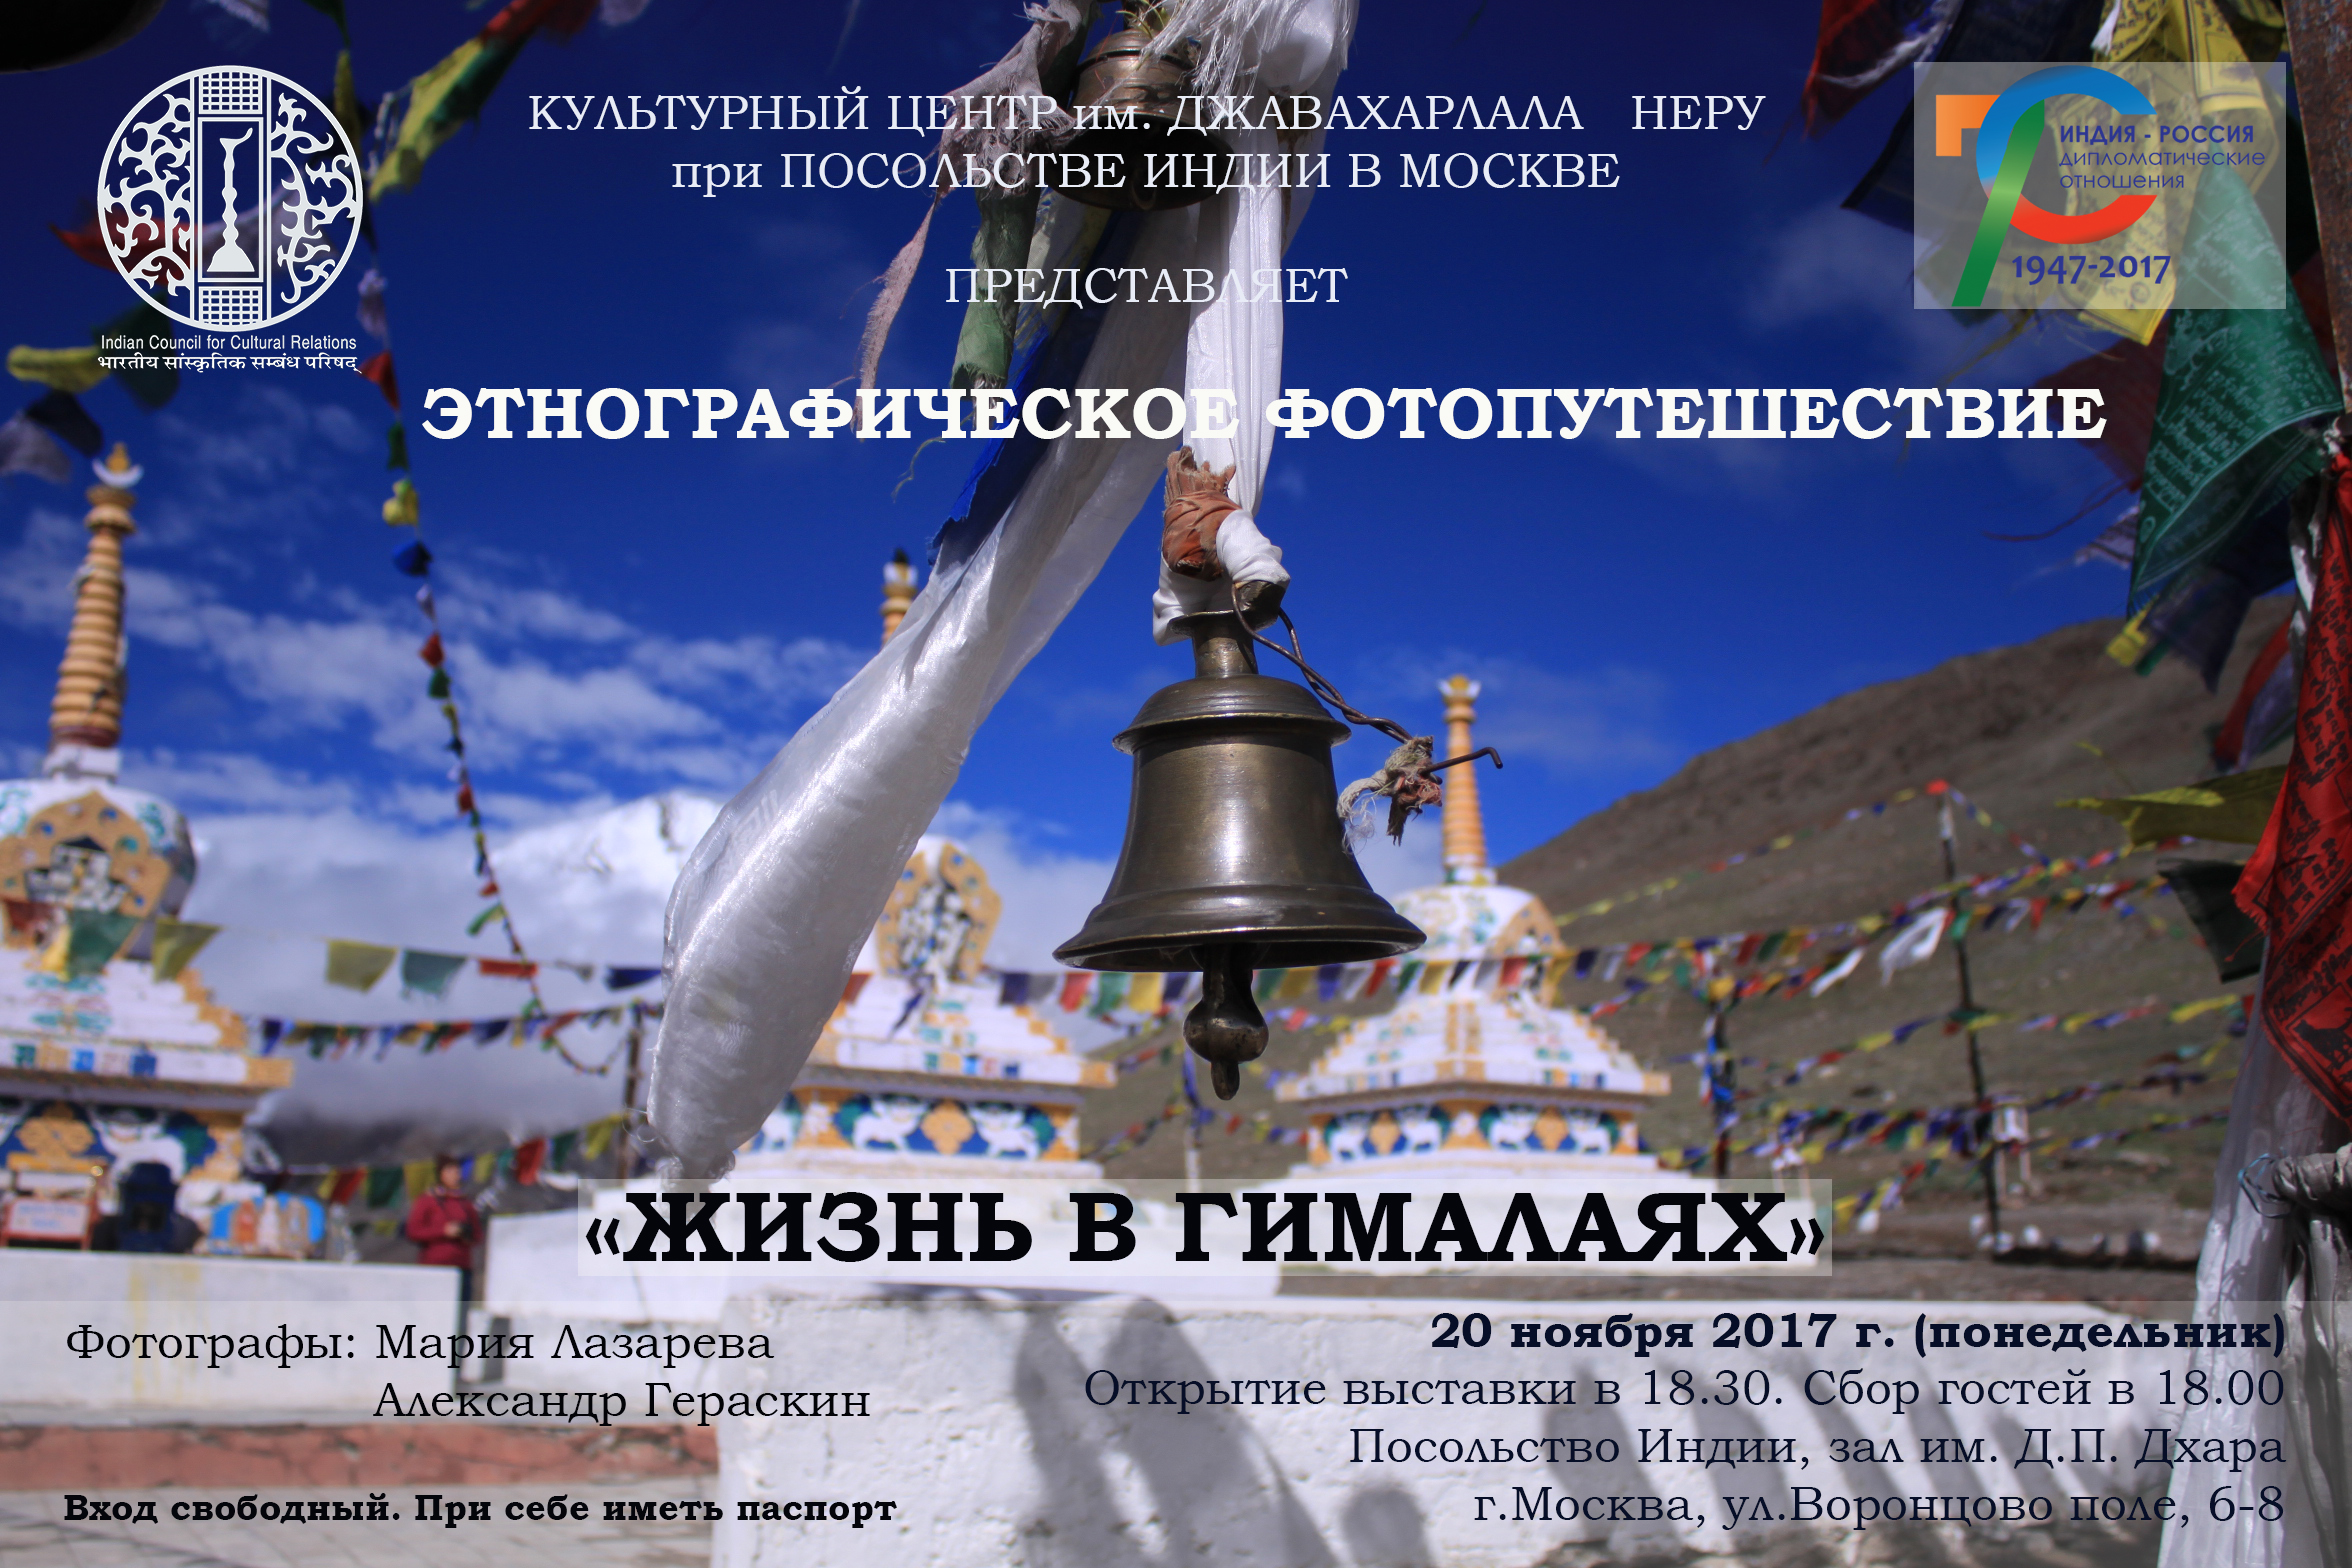 Персональная фотовыставка «Жизнь в Гималаях» в Посольстве Индии в Москве 20 ноября